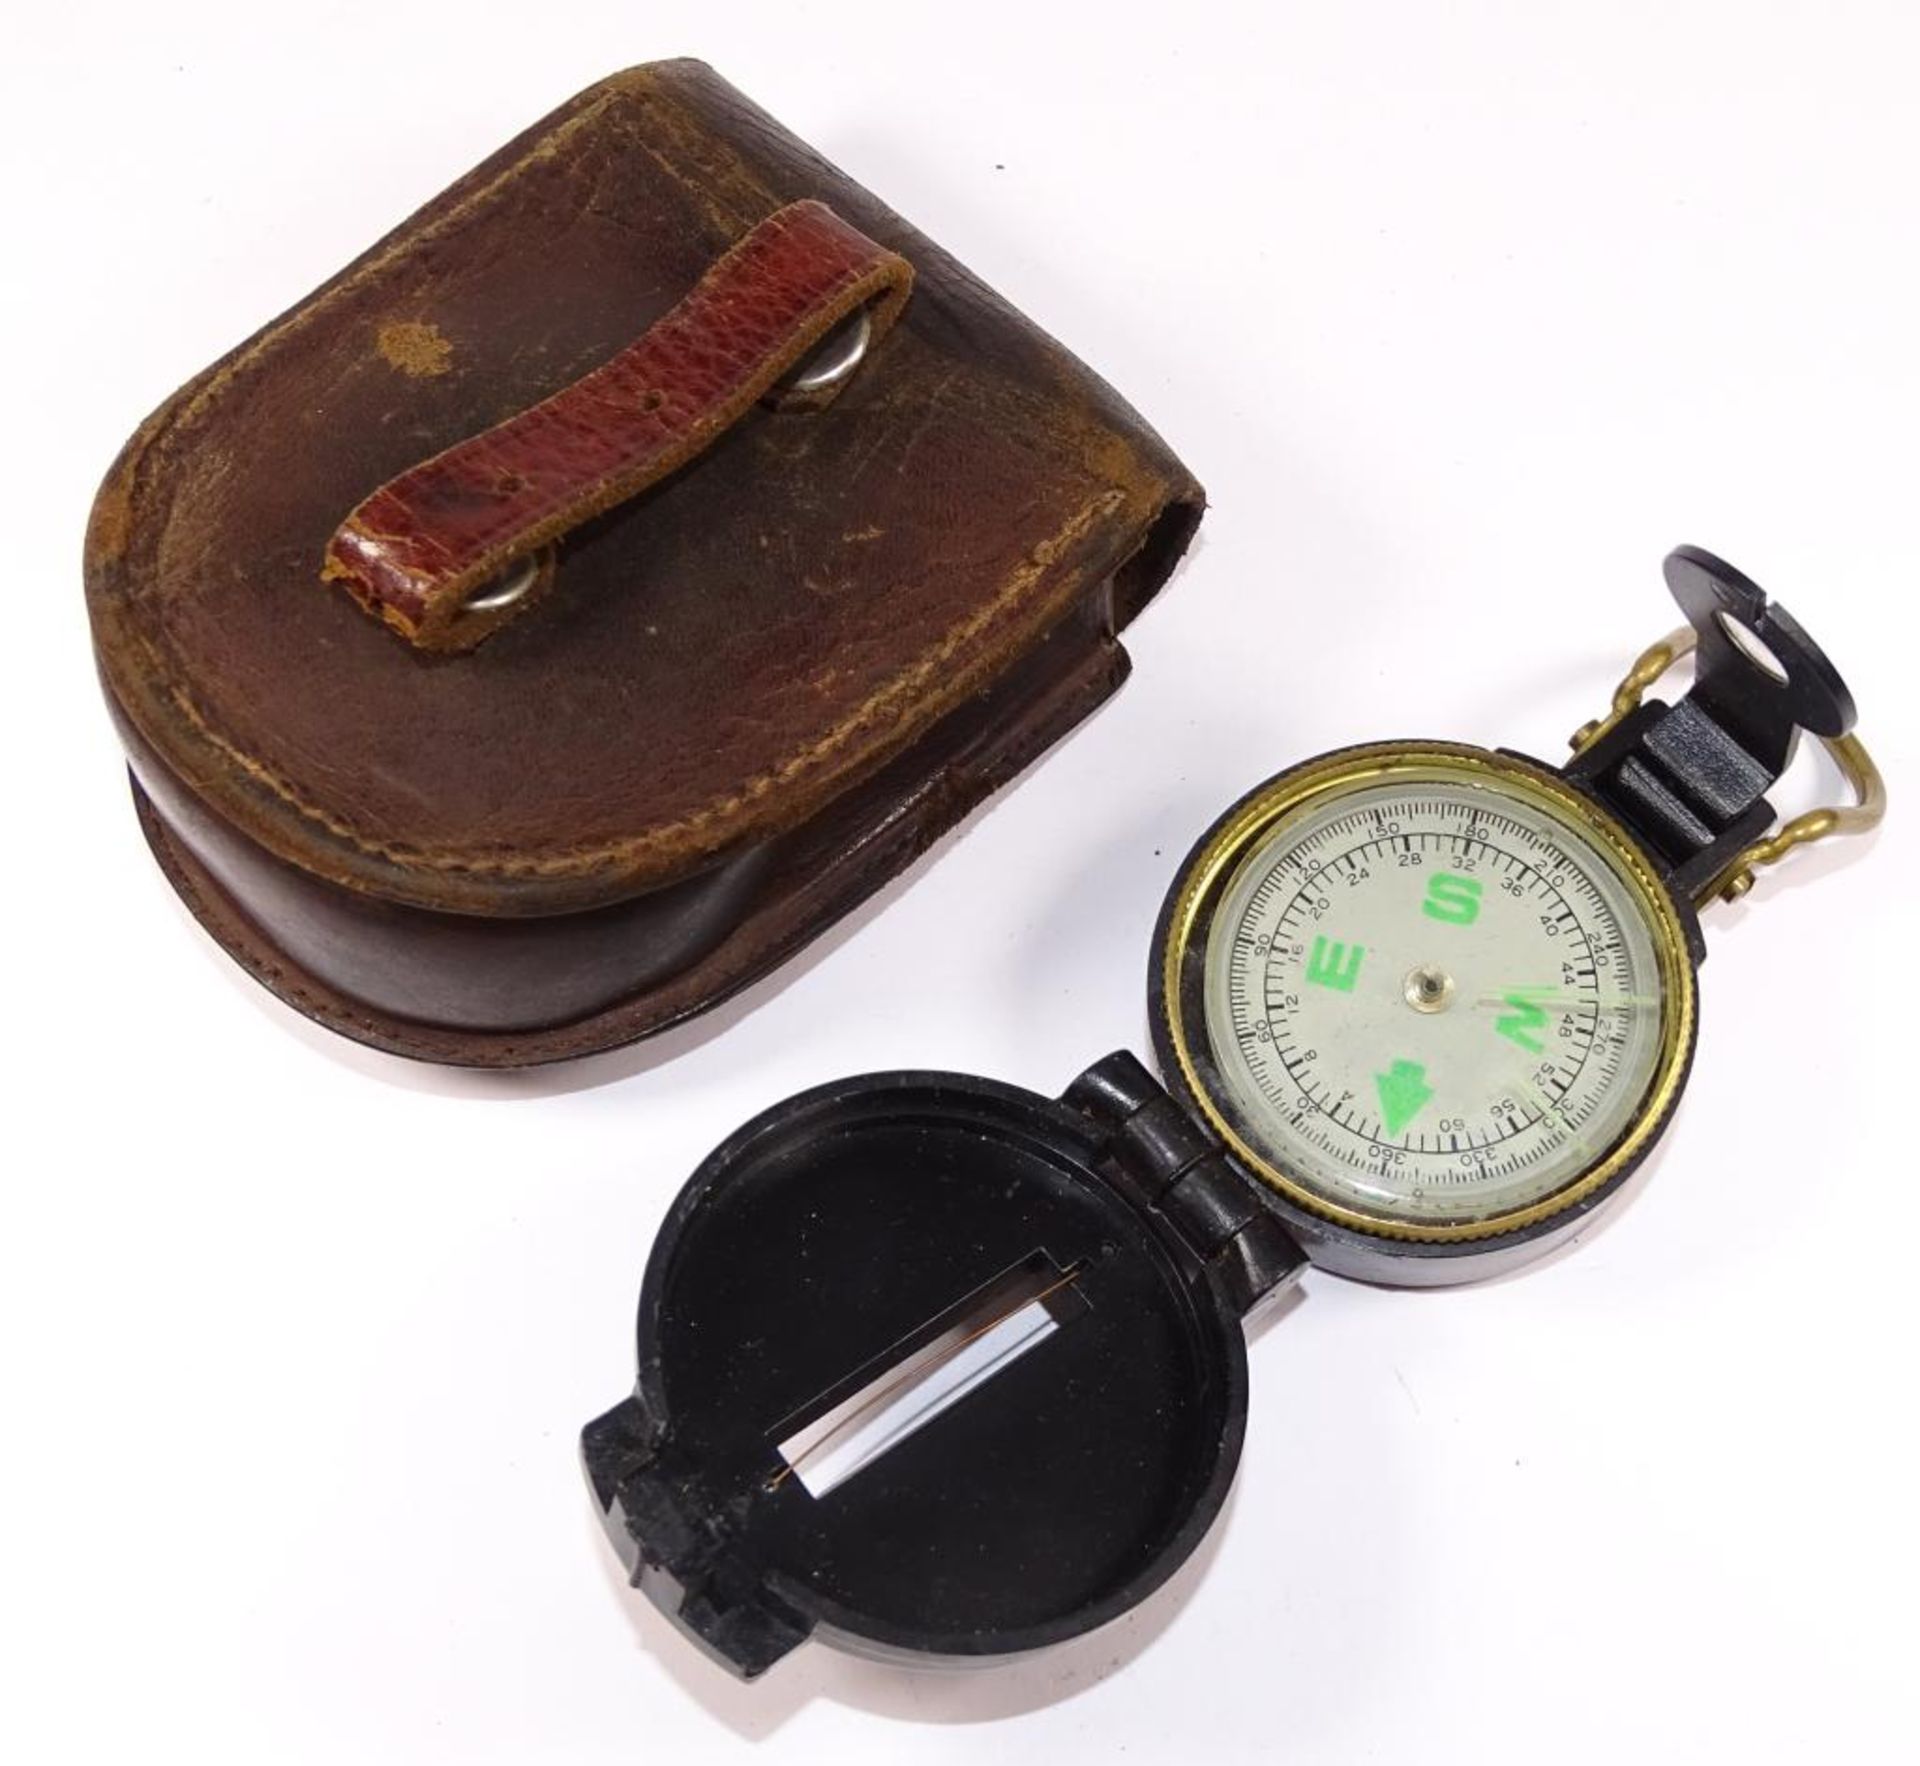 Kompass in Leder Tasche - Bild 3 aus 4